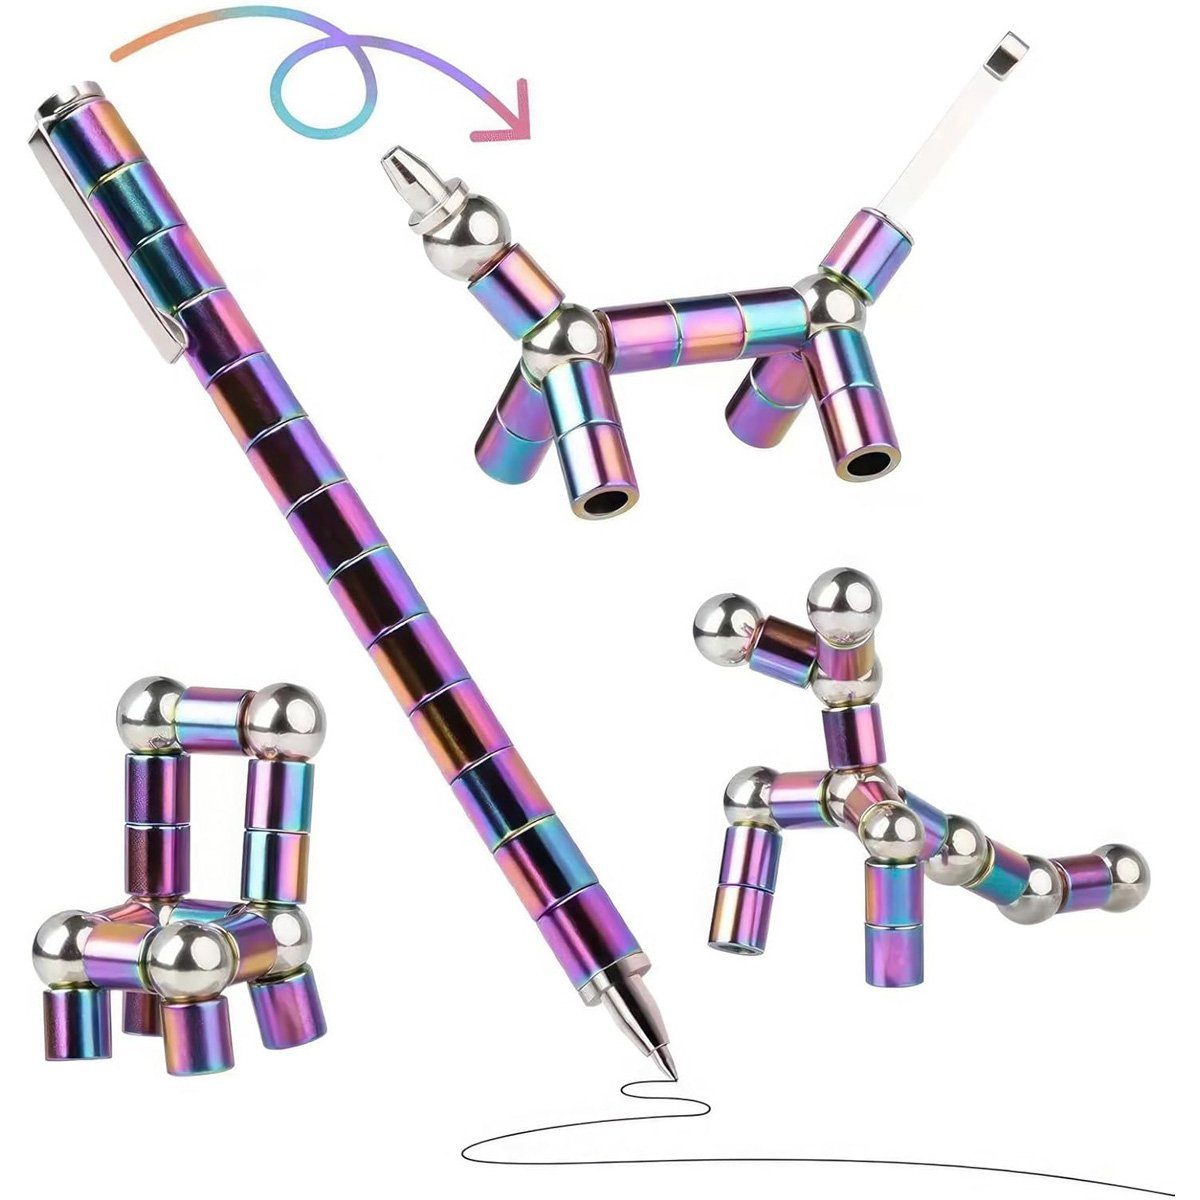 götäzer Filzstift Magnetischer Stressabbau-Stift: Multifunktional Erfindung, und Geschenk Teenager, Stressabbau für magnetische Farbe verformbar., Spielzeug